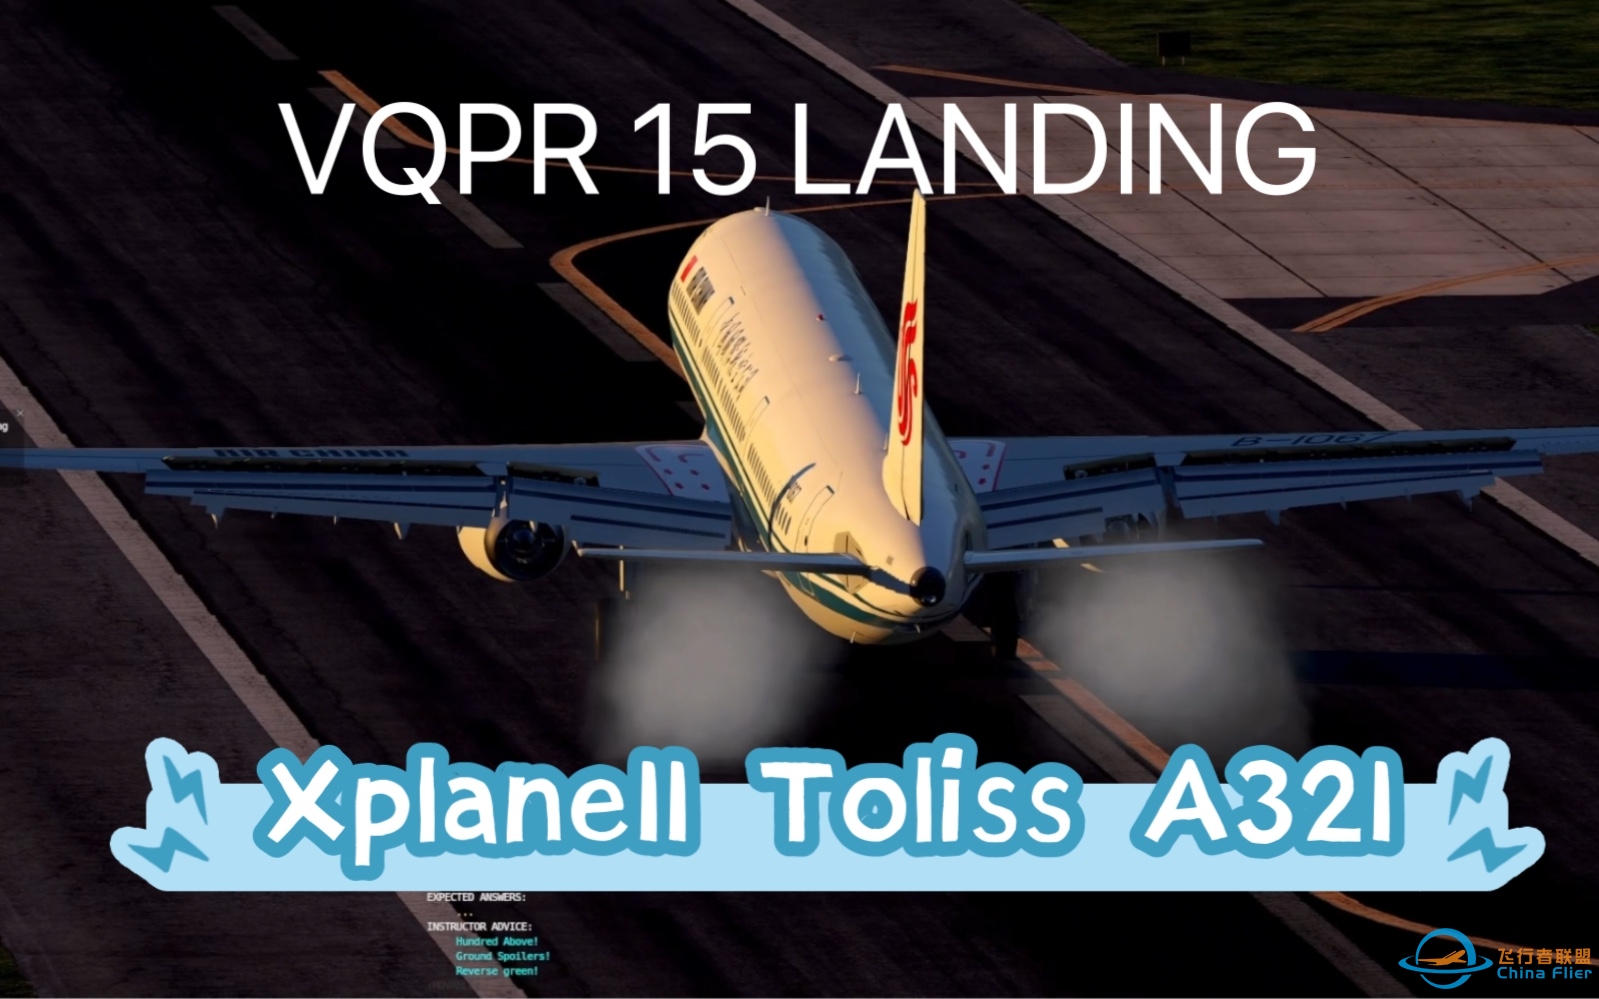 VQPR 15 LANDING Xplane11 Toliss A321-3179 